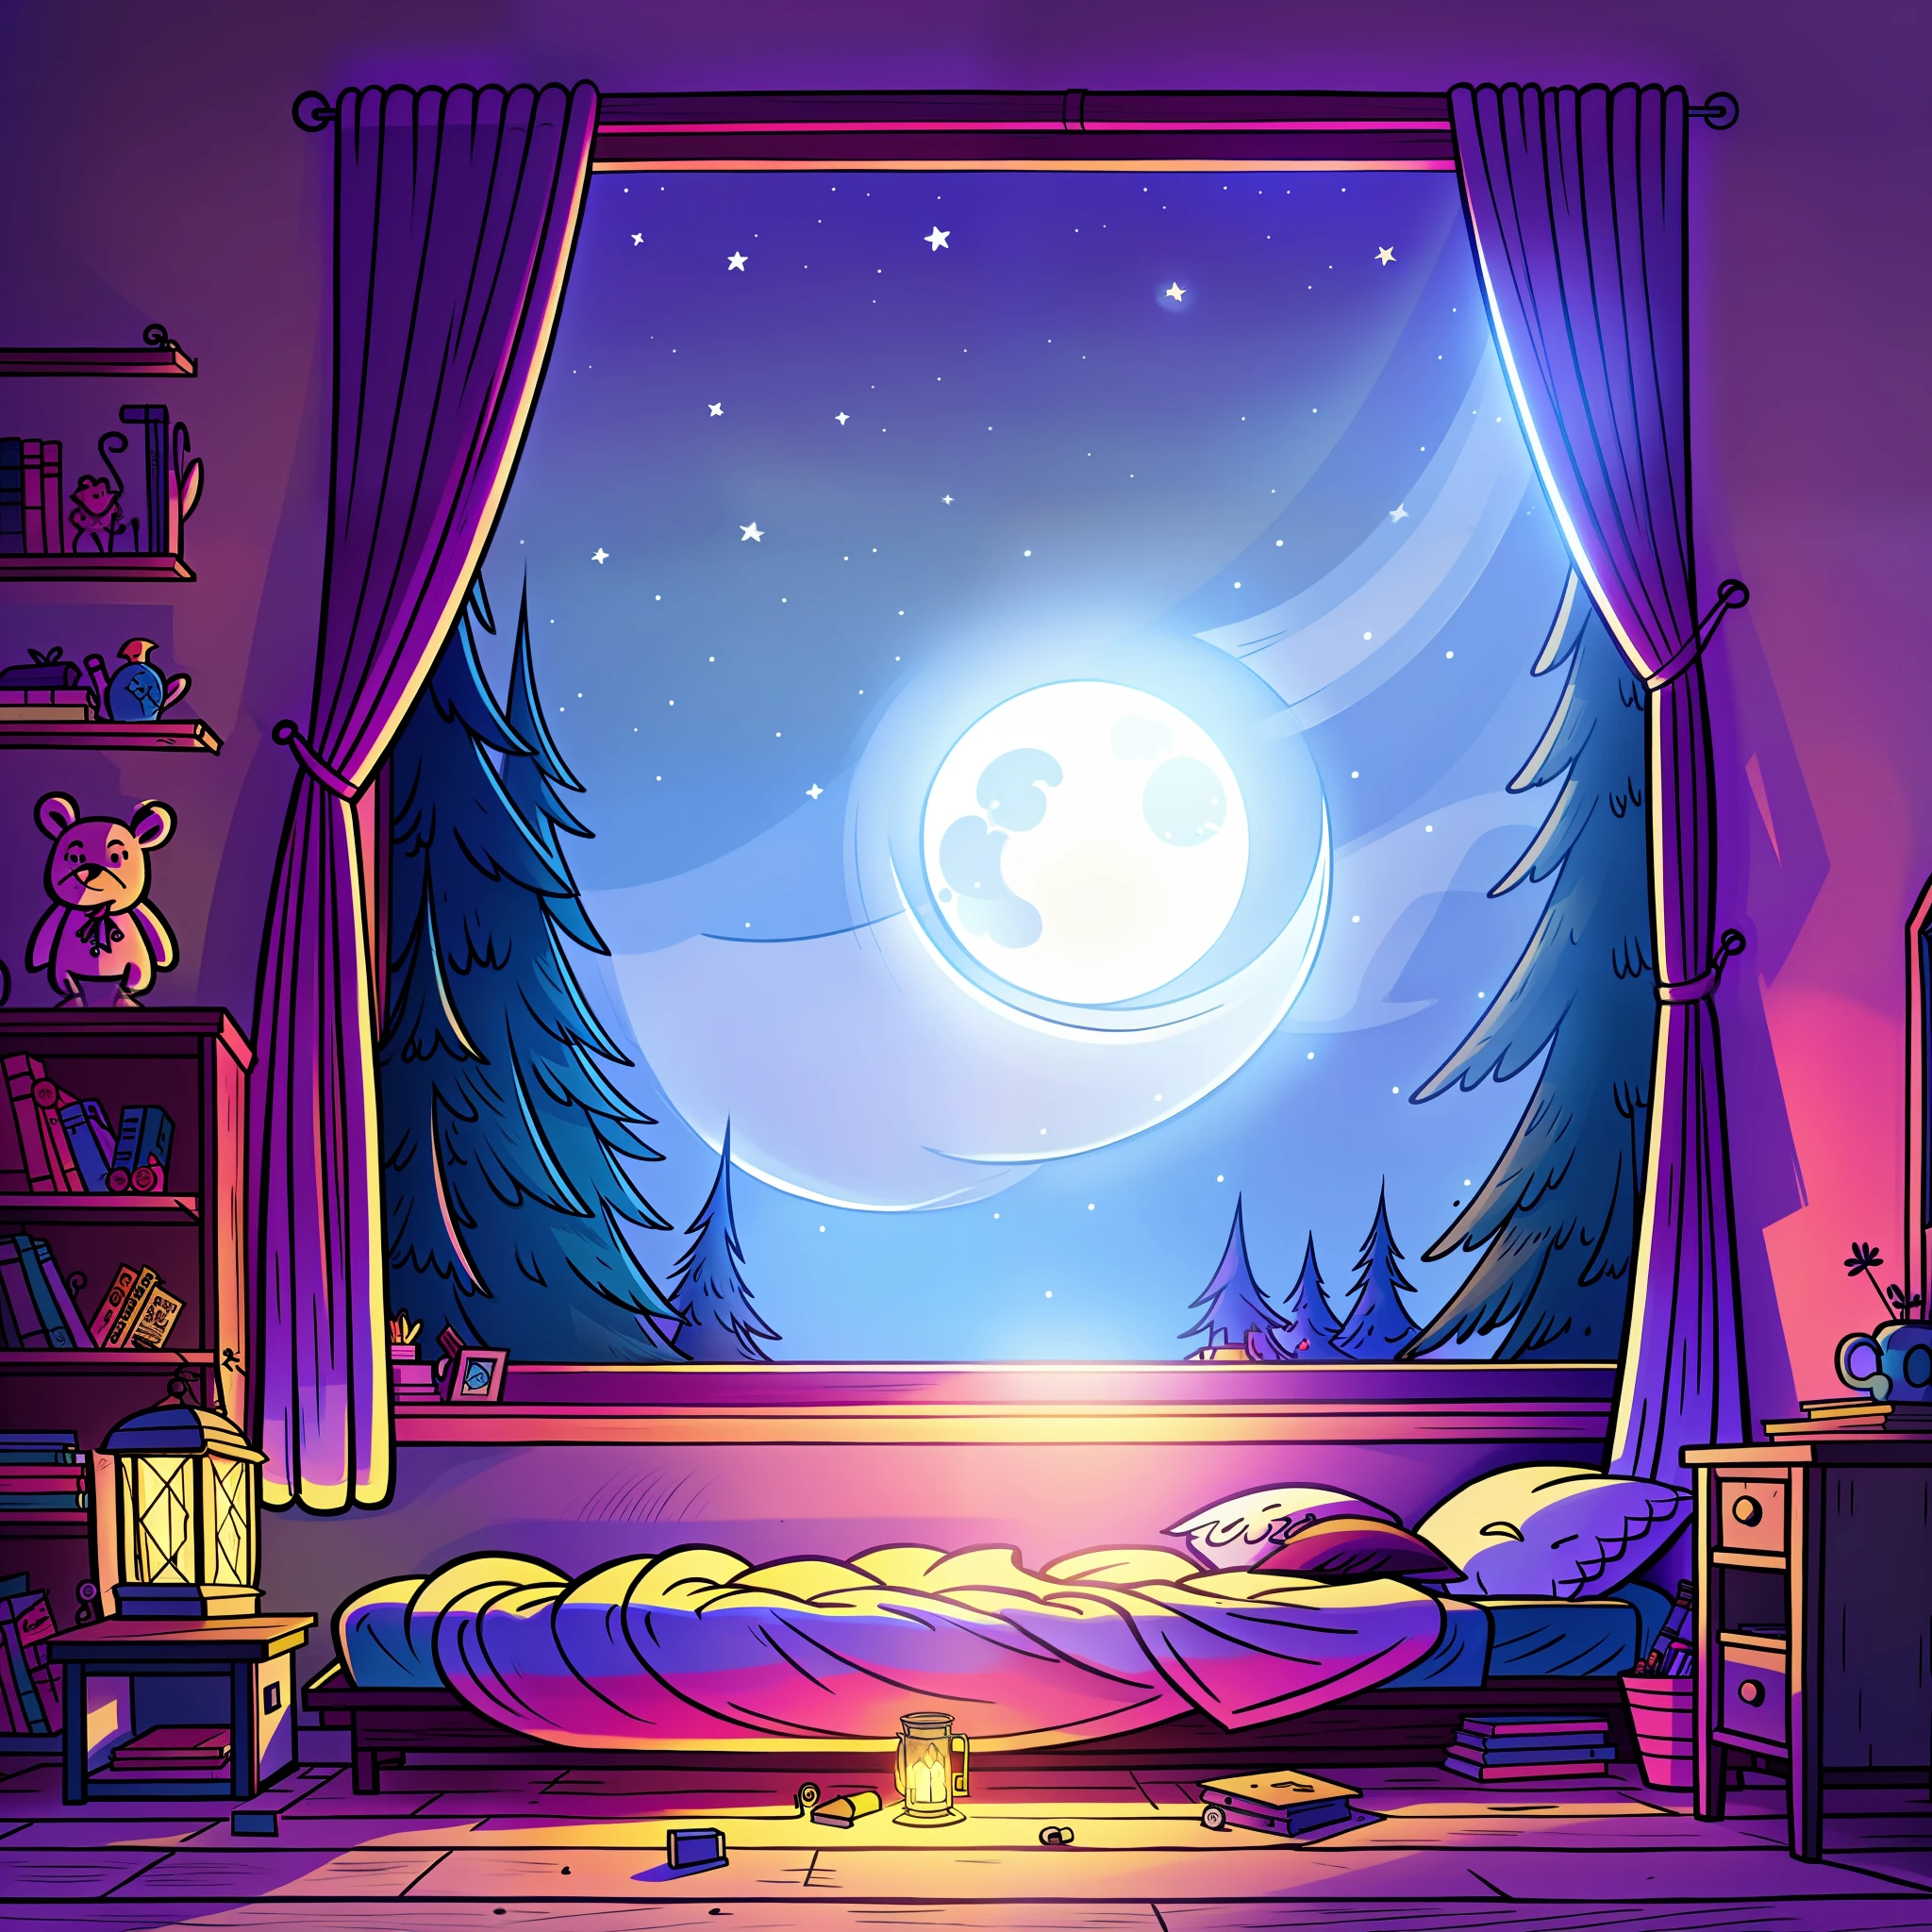 晚上舒适的卧室, 月光透过窗户照进来, 详细说明, 卡通片, 类似重力瀑布的风格,